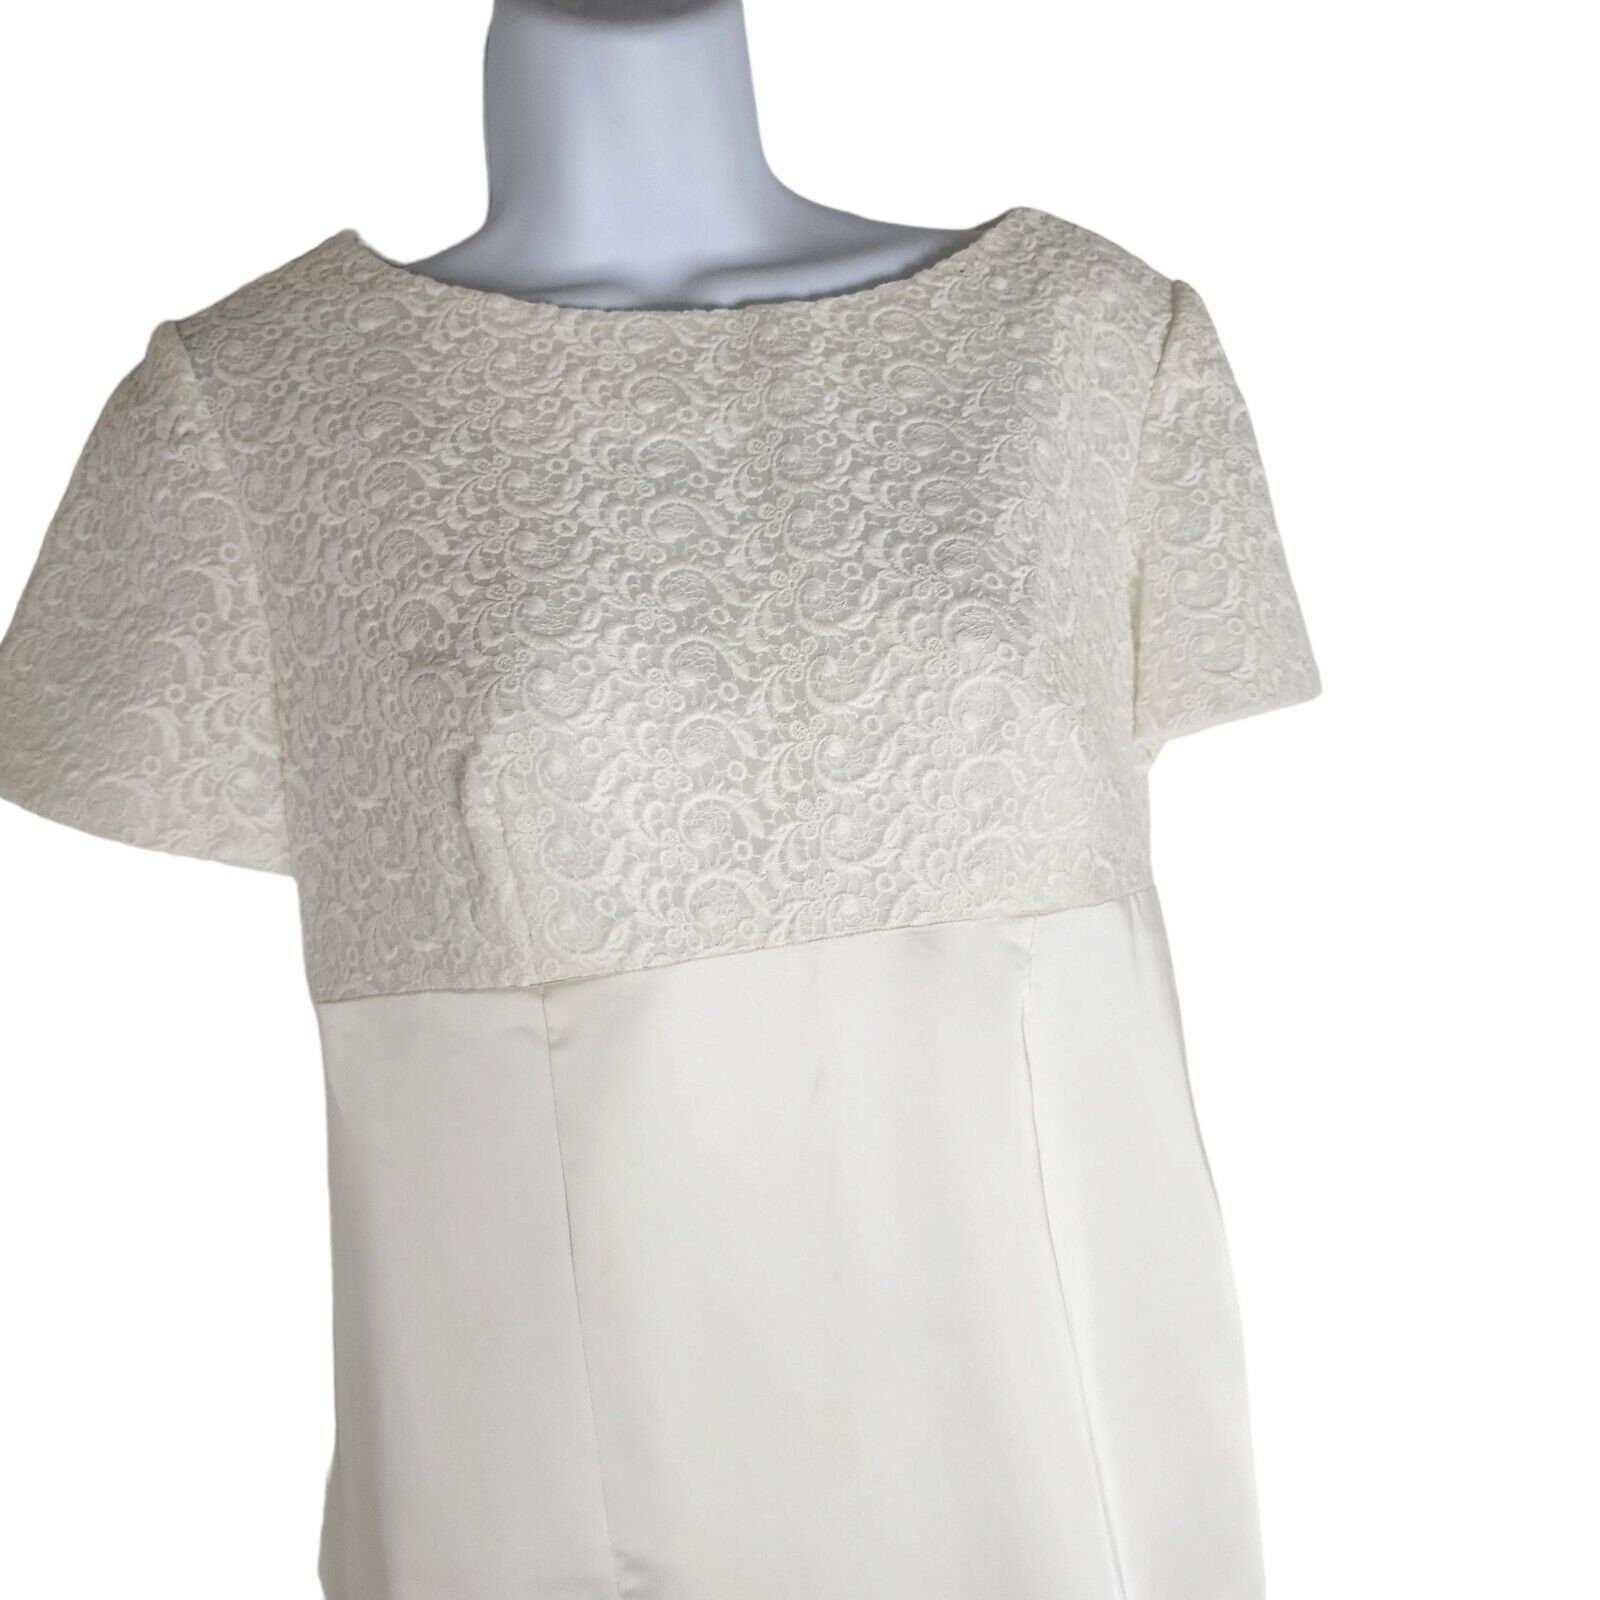 Vintage 1960's White S Wedding Dress Short Sleeve… - image 4